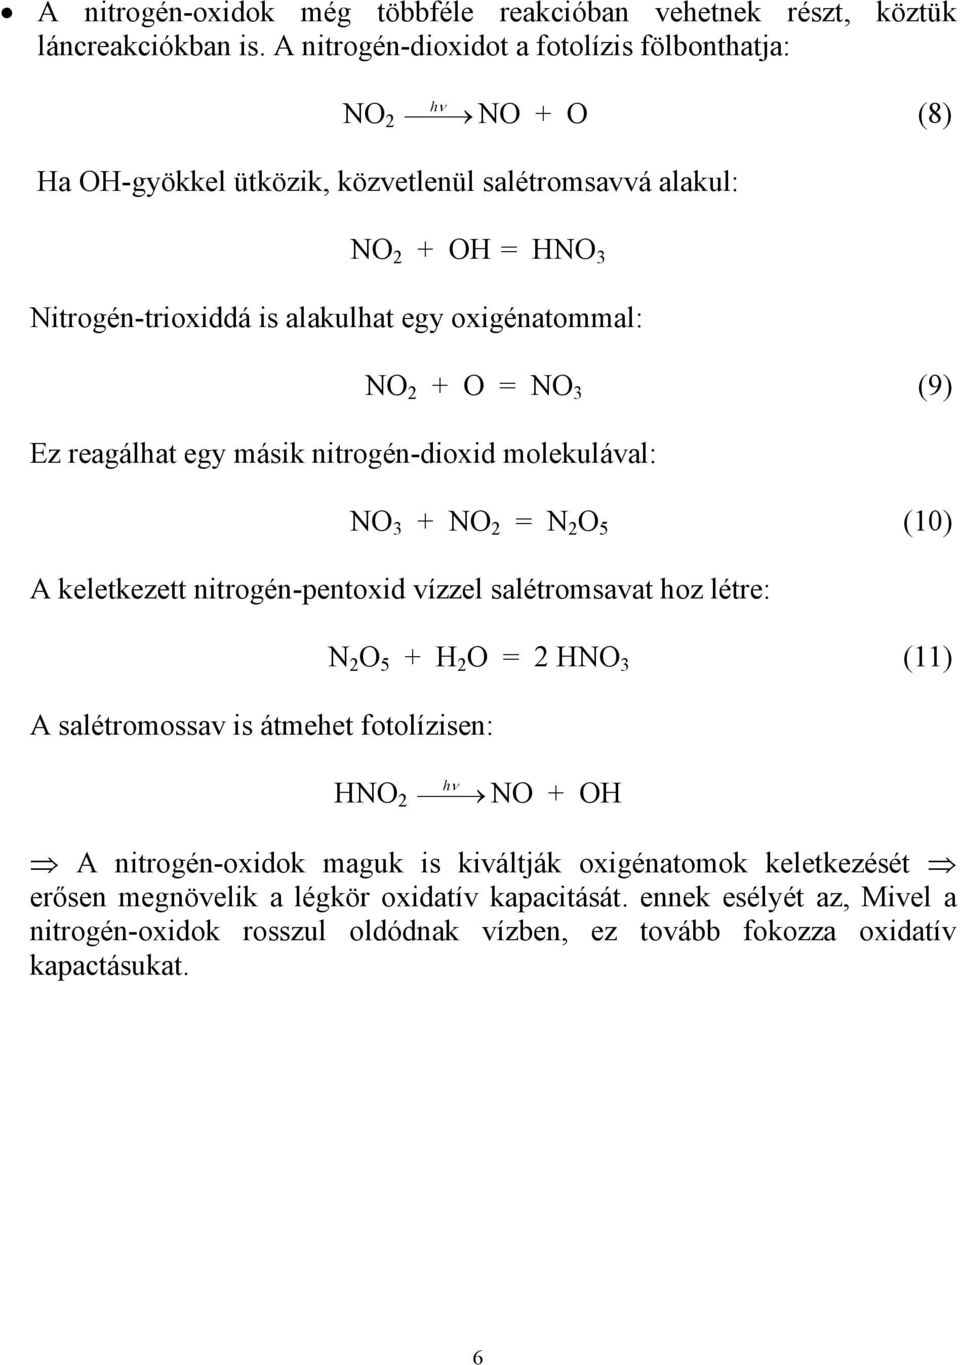 oxigénatommal: Ez reagálhat egy másik nitrogén-dioxid molekulával: NO 2 + O = NO 3 (9) NO 3 + NO 2 = N 2 O 5 (10) A keletkezett nitrogén-pentoxid vízzel salétromsavat hoz létre: A